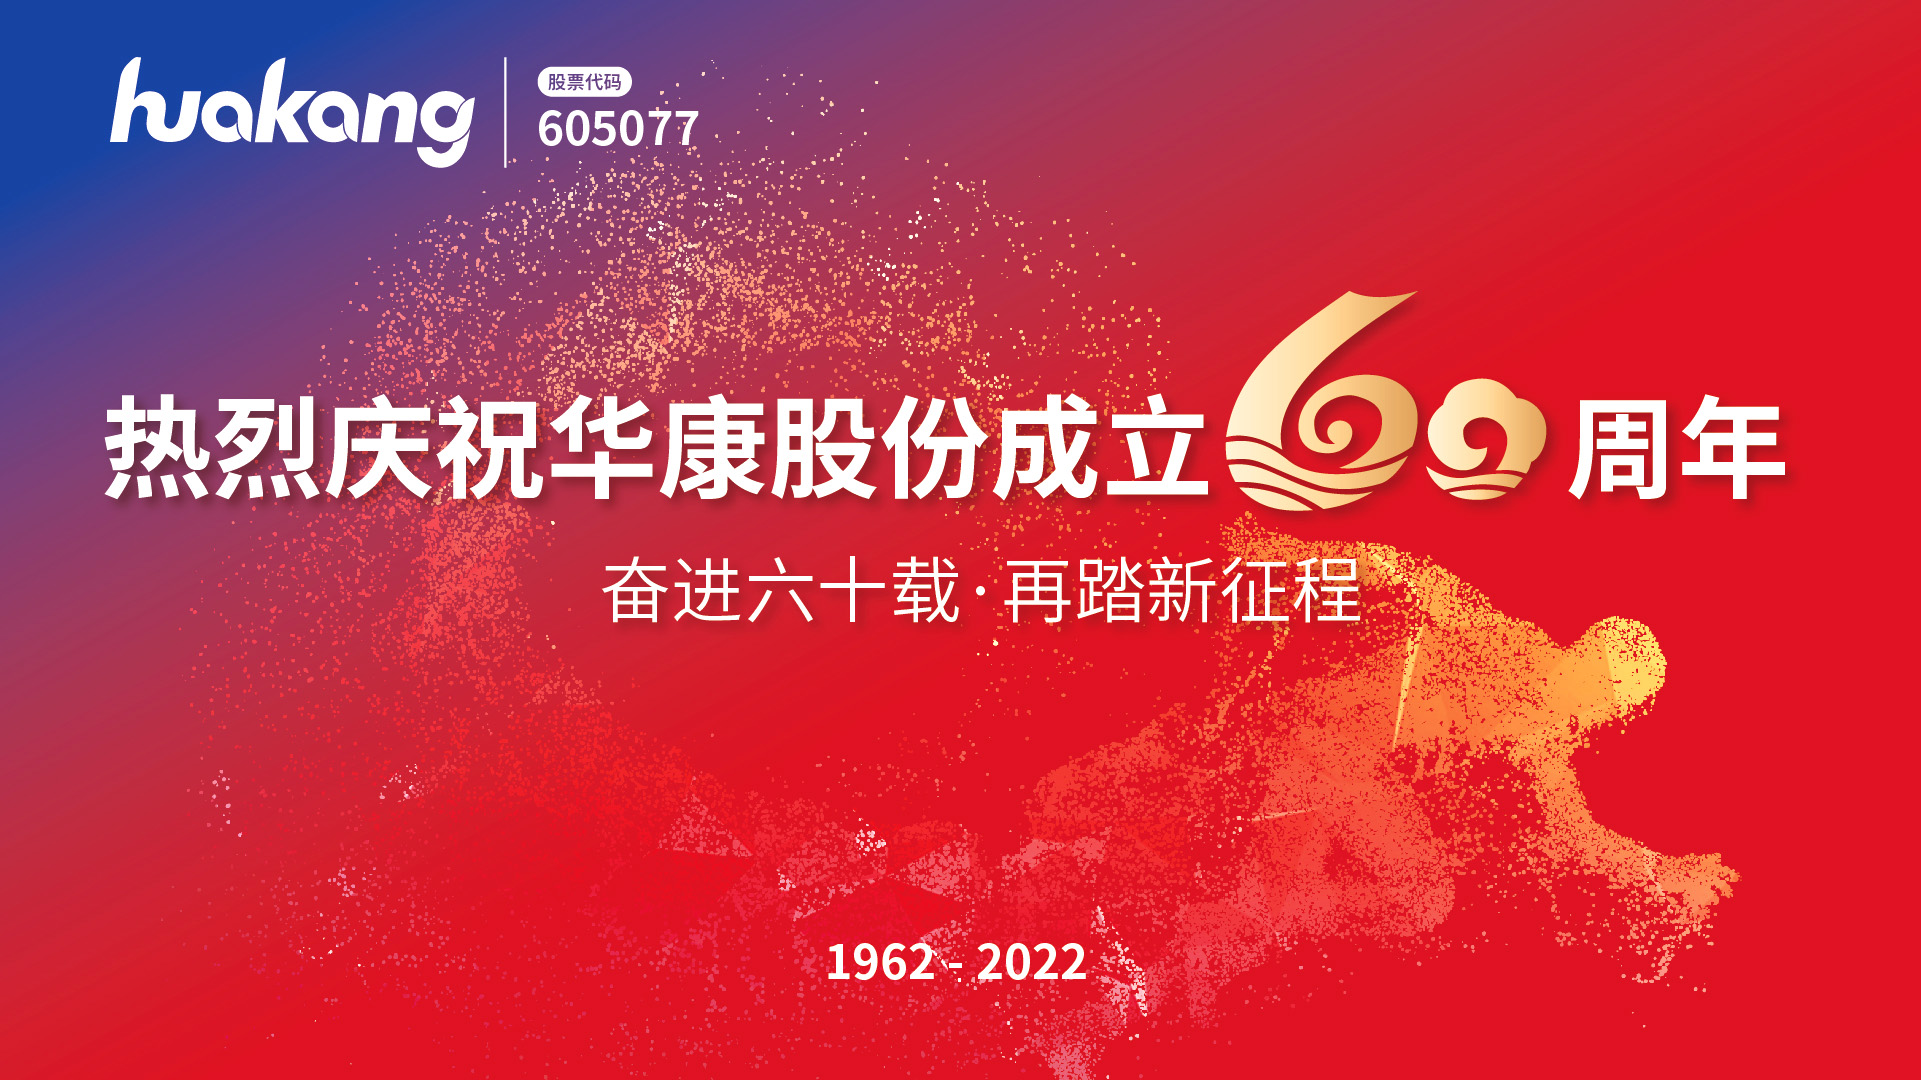 逐梦甜蜜六十载，健康中国向未来 华康股份成立60周年庆典盛大举行